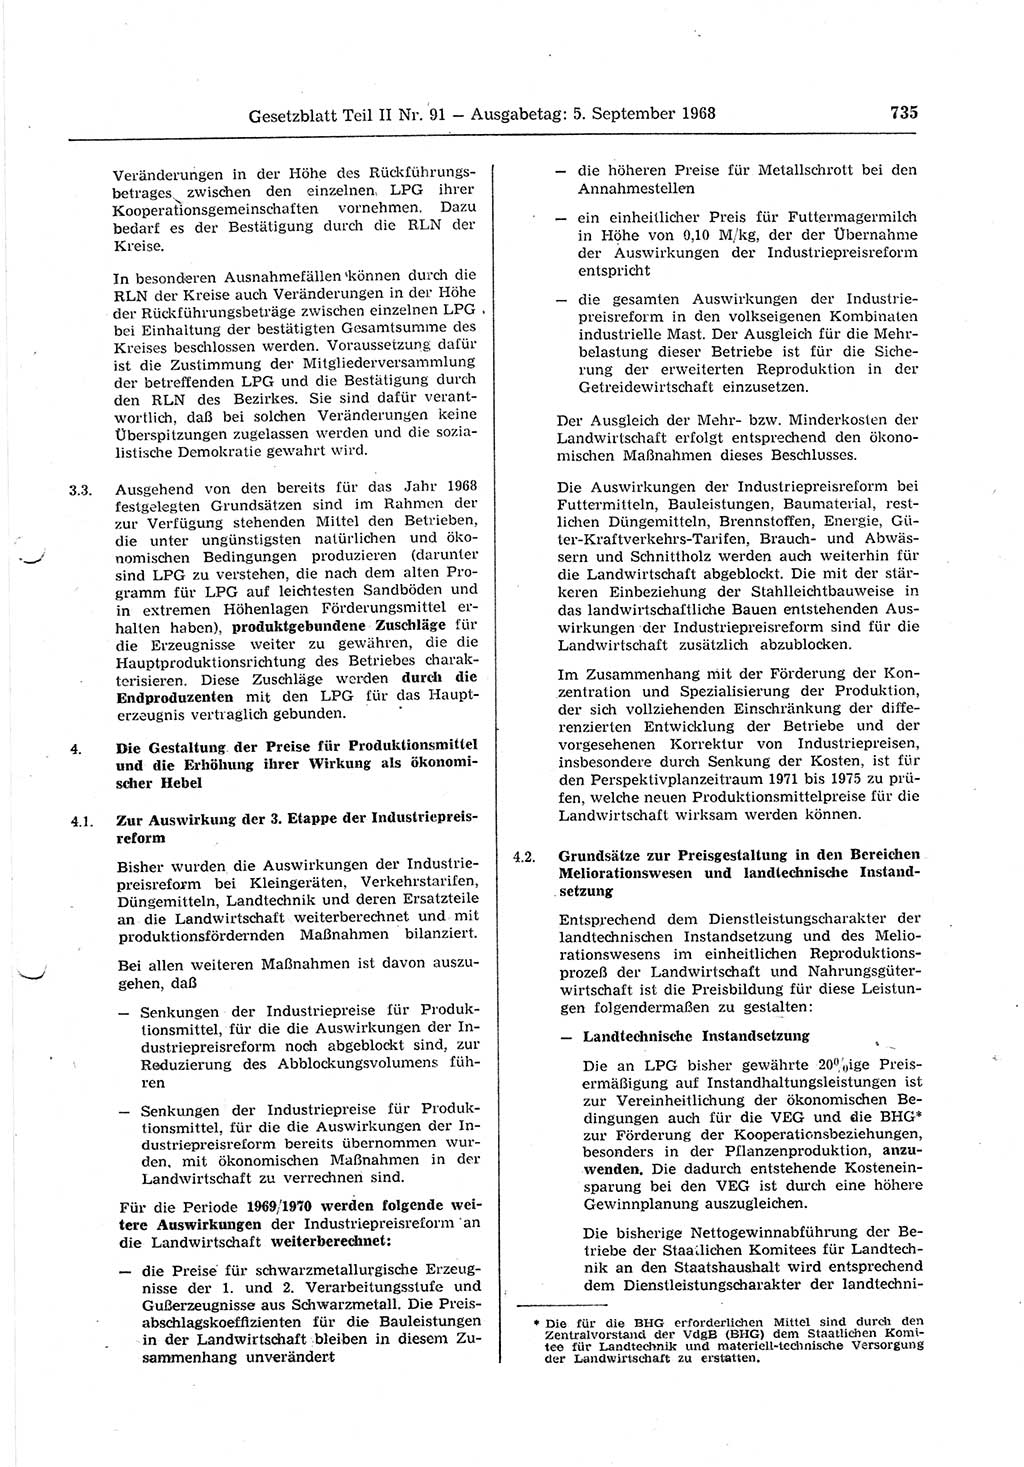 Gesetzblatt (GBl.) der Deutschen Demokratischen Republik (DDR) Teil ⅠⅠ 1968, Seite 735 (GBl. DDR ⅠⅠ 1968, S. 735)